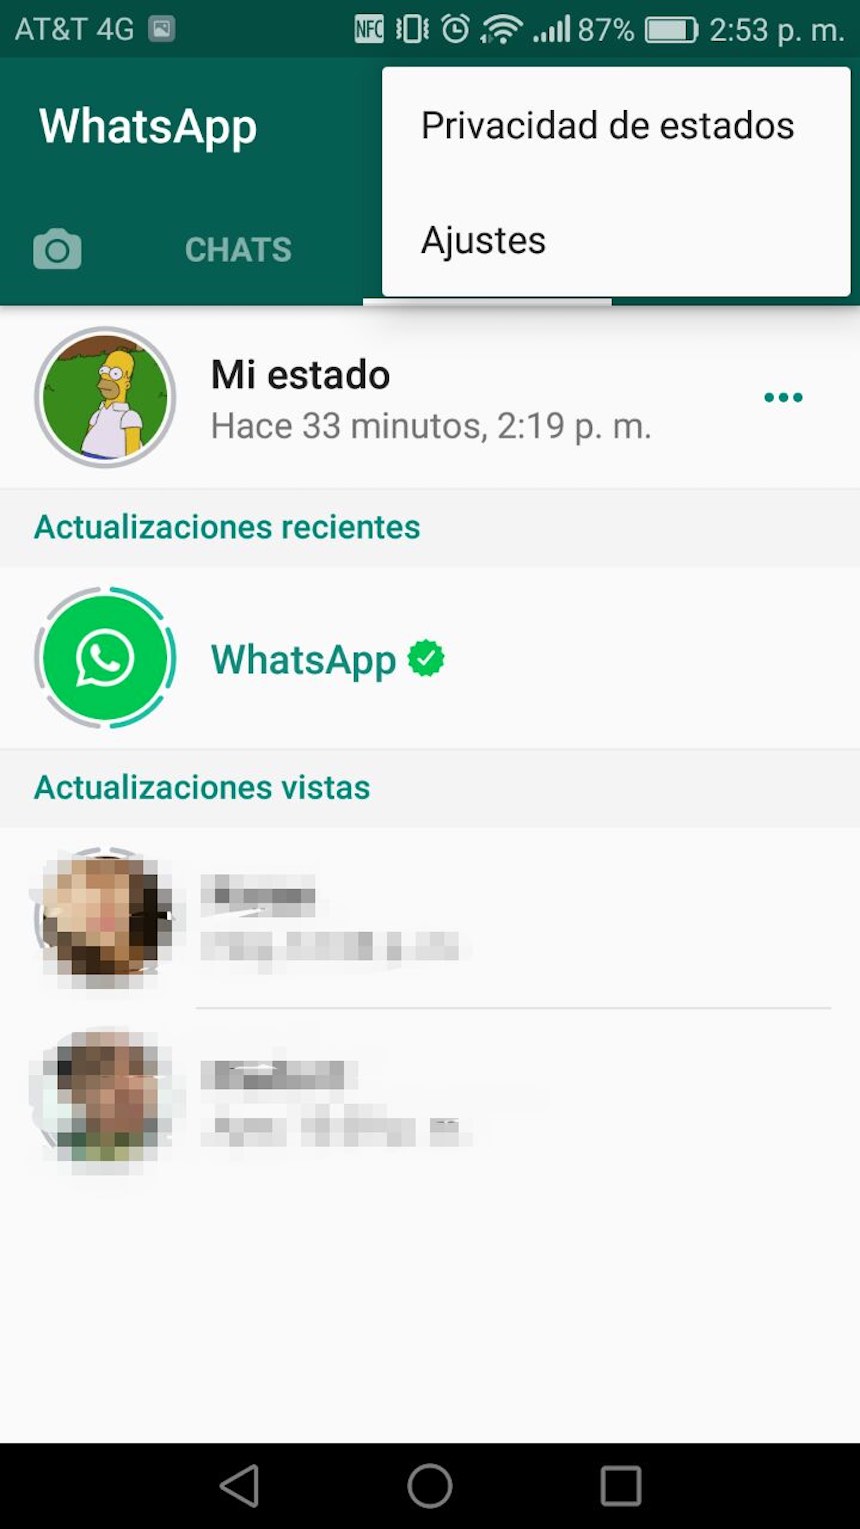 Privacidad de estados - WhatsApp